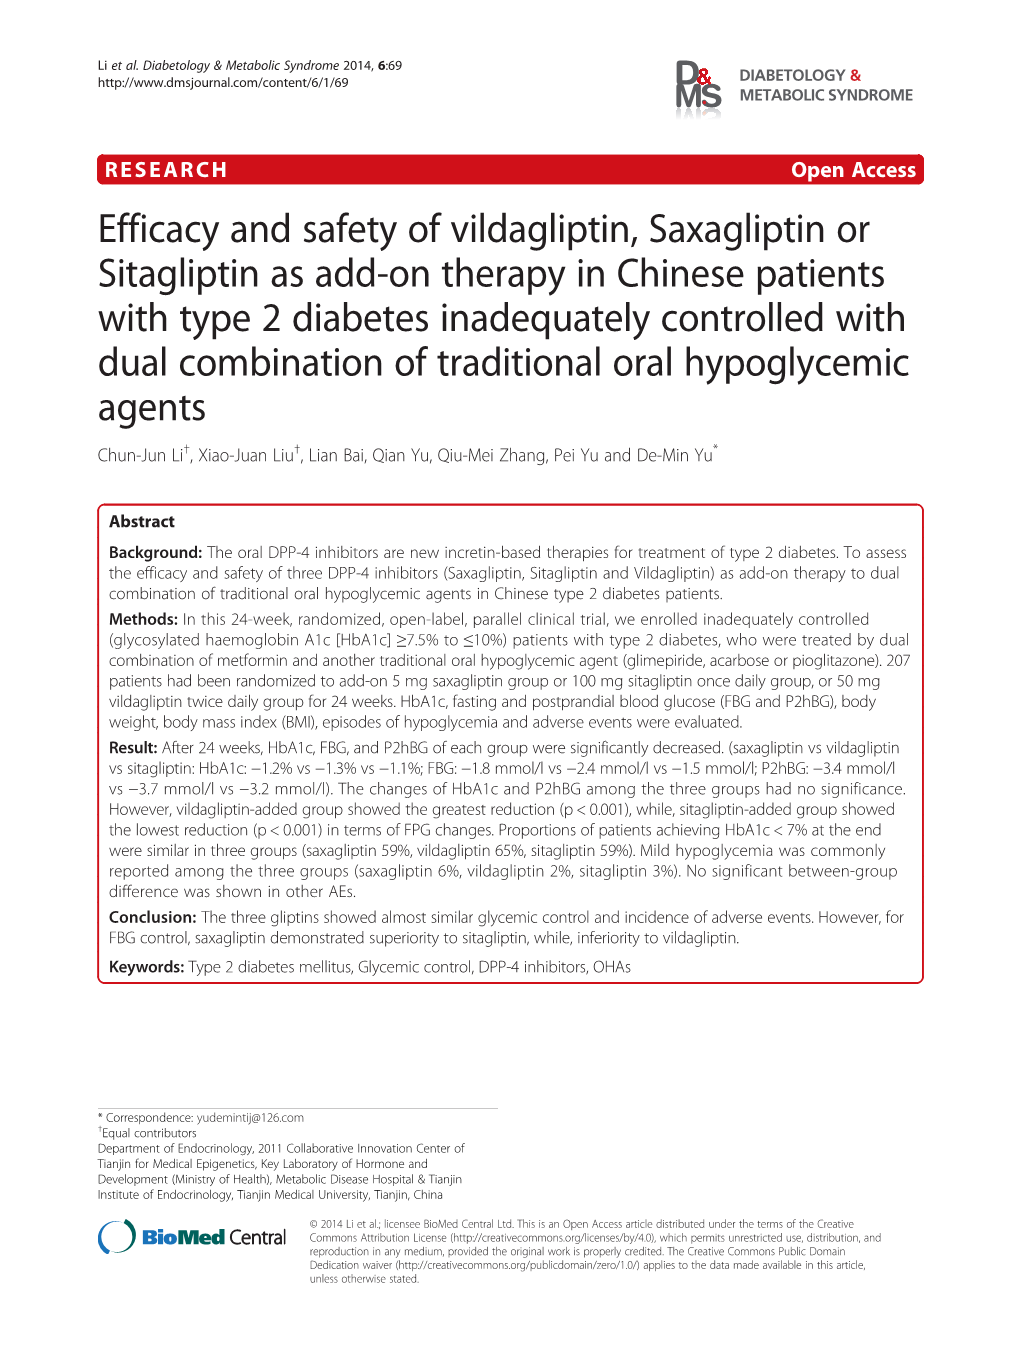 Efficacy and Safety of Vildagliptin, Saxagliptin Or Sitagliptin As